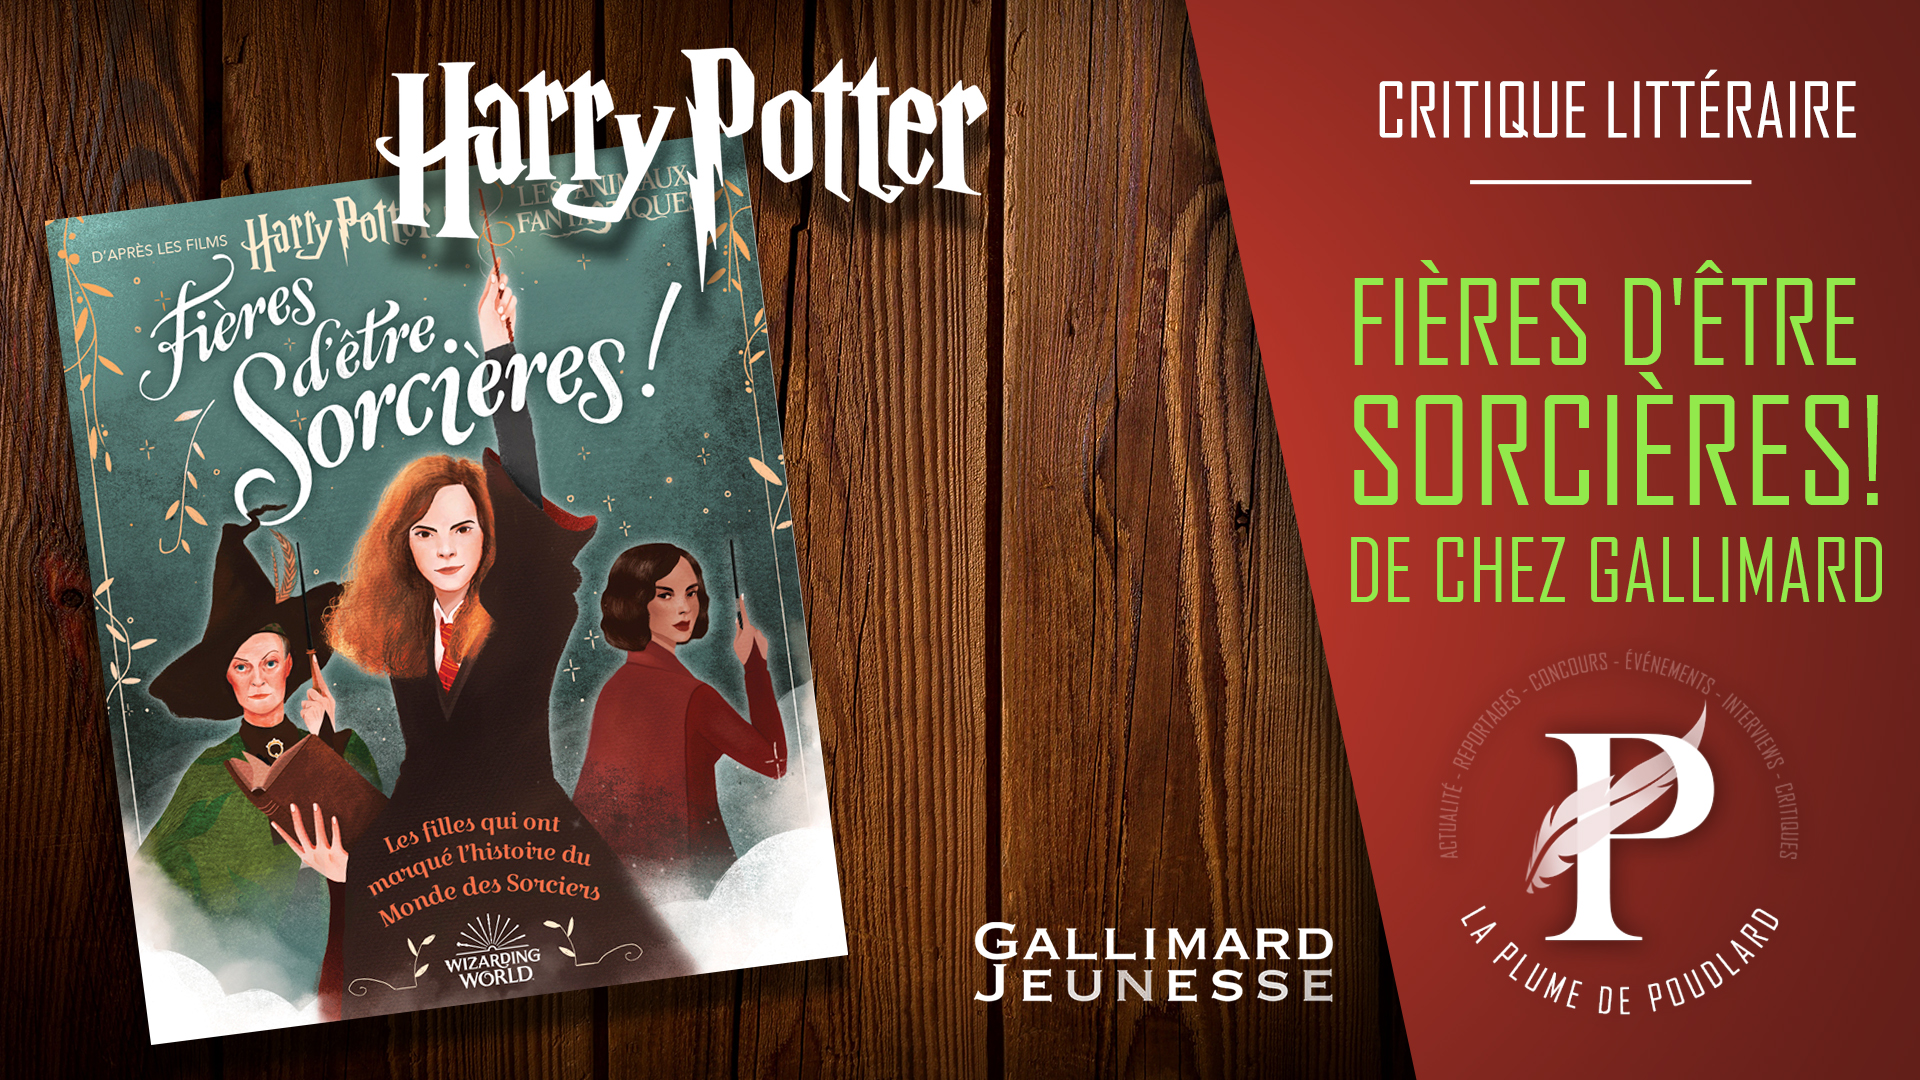 Critique Littéraire : Fières d'être sorcières ! Harry Potter